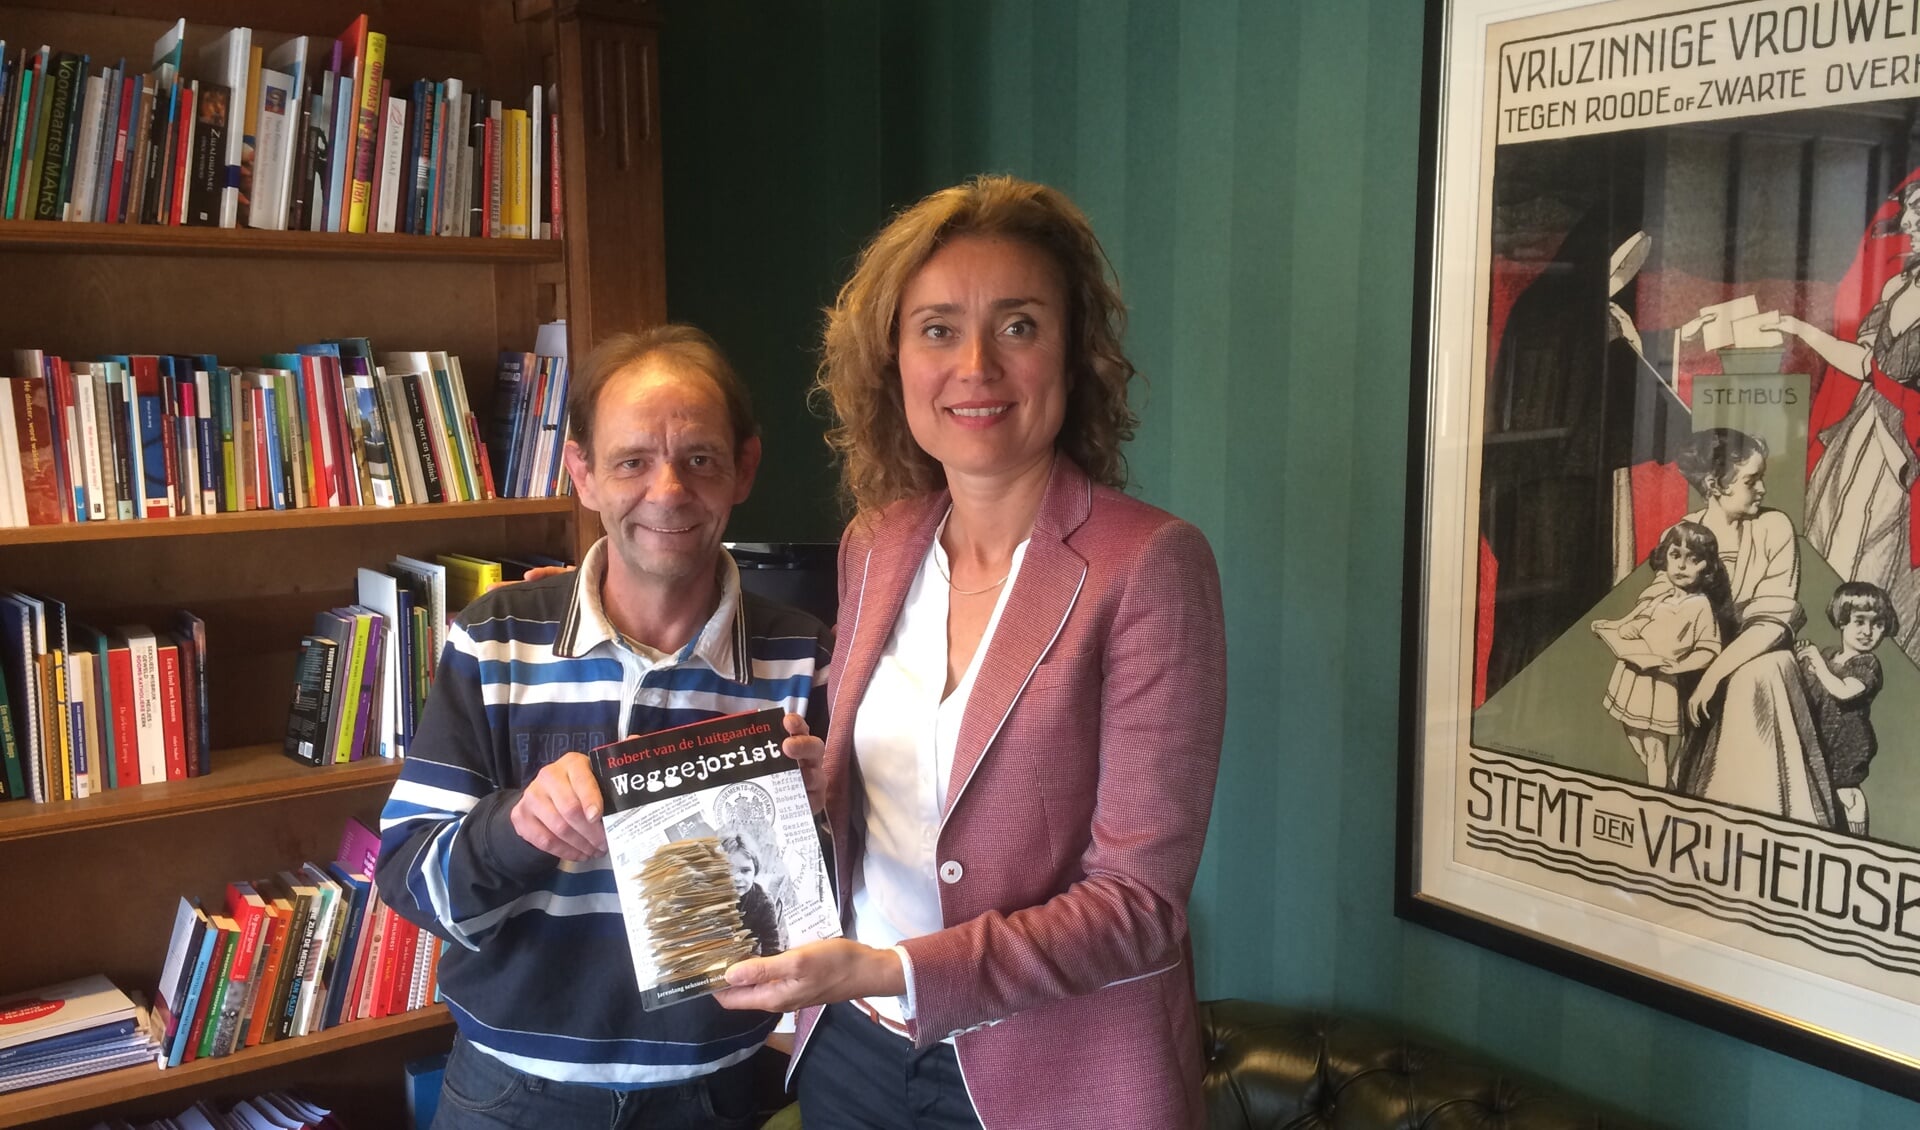 Robert van de Luitgaarden en Vera Bergkamp die als kamerlid het boek Weggejorist in ontvangst nam.